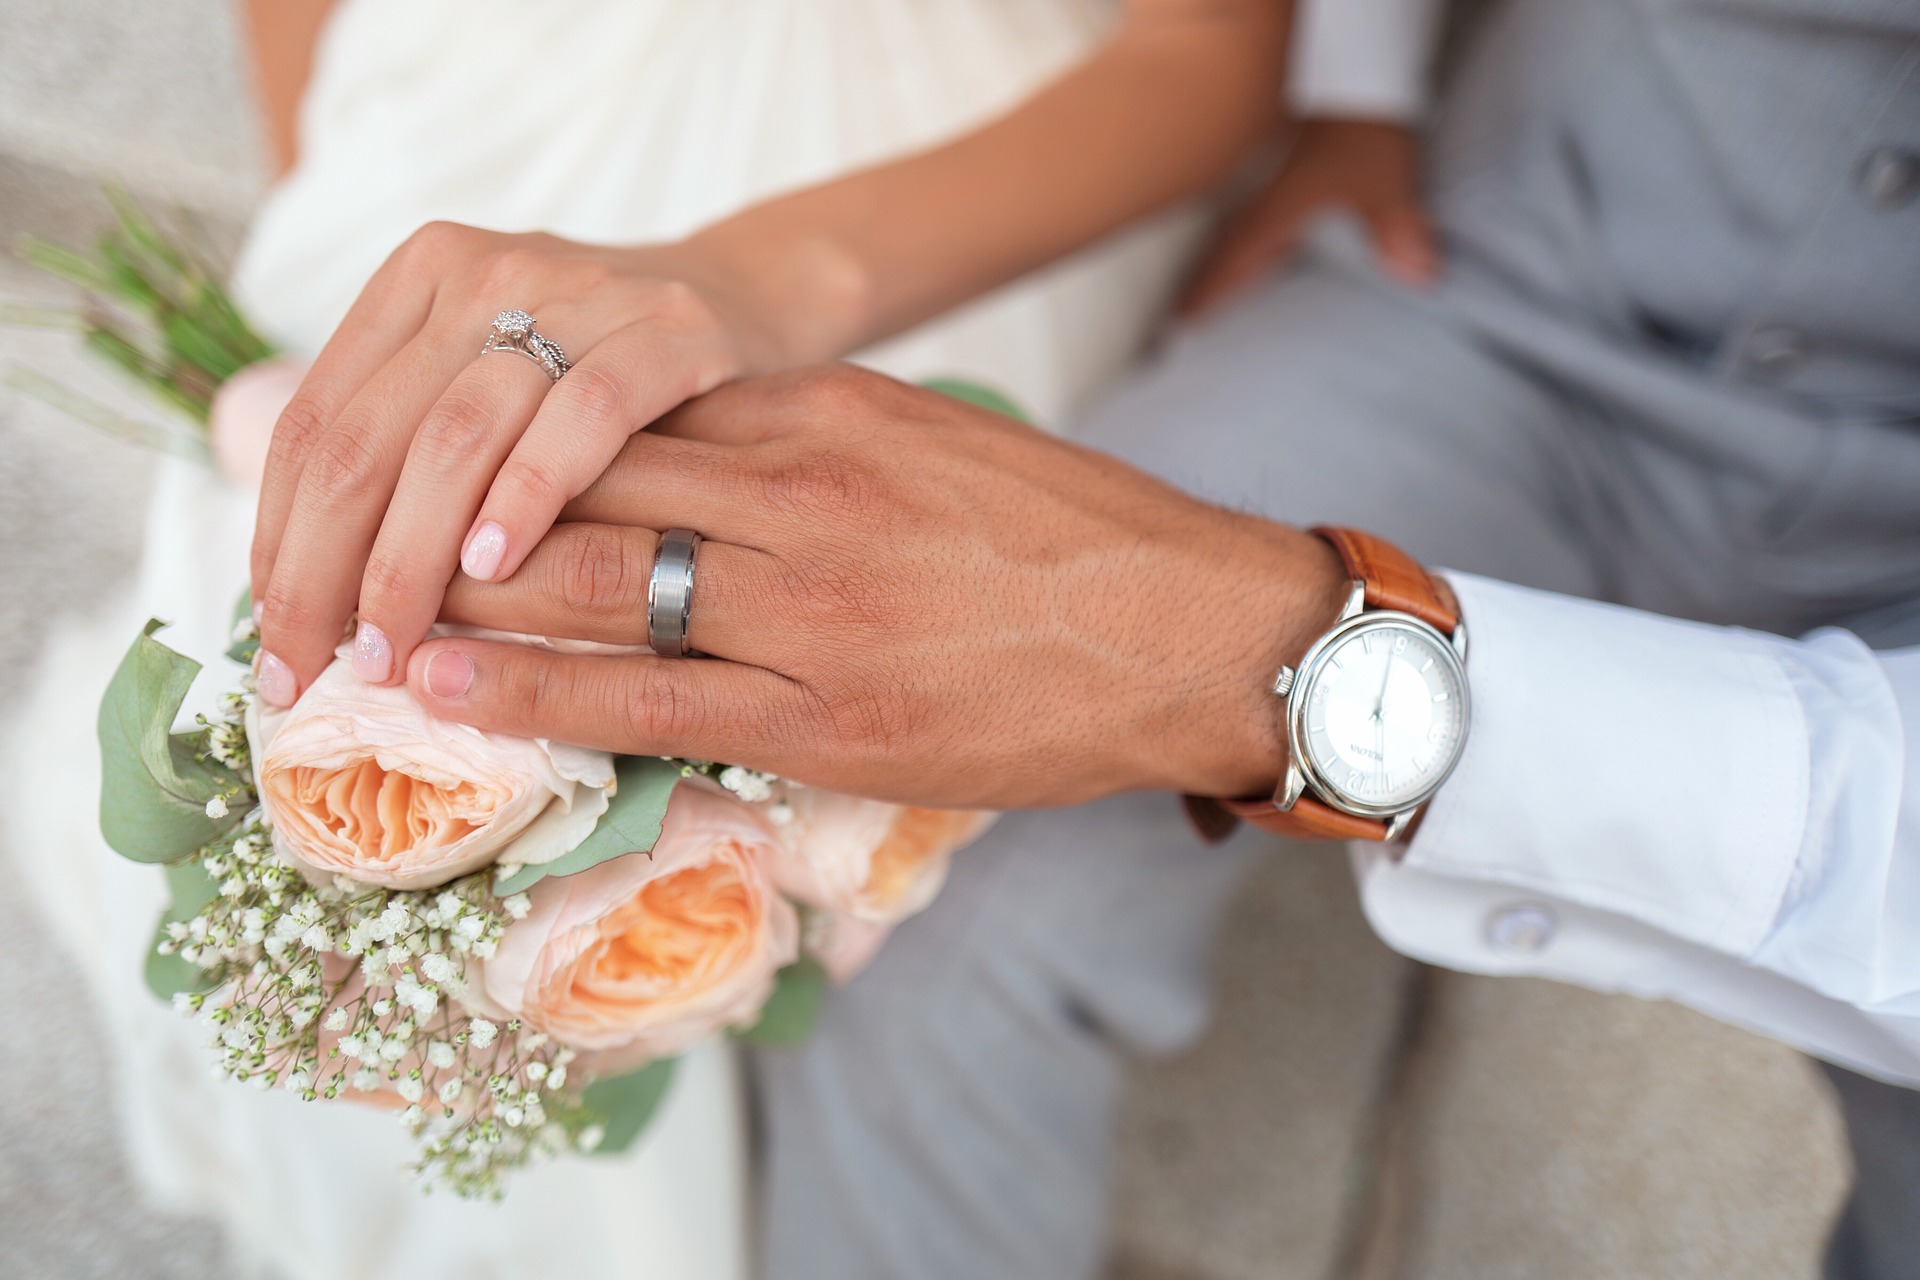 Het huwelijk: waar zeg je eigenlijk ‘ja’ op?